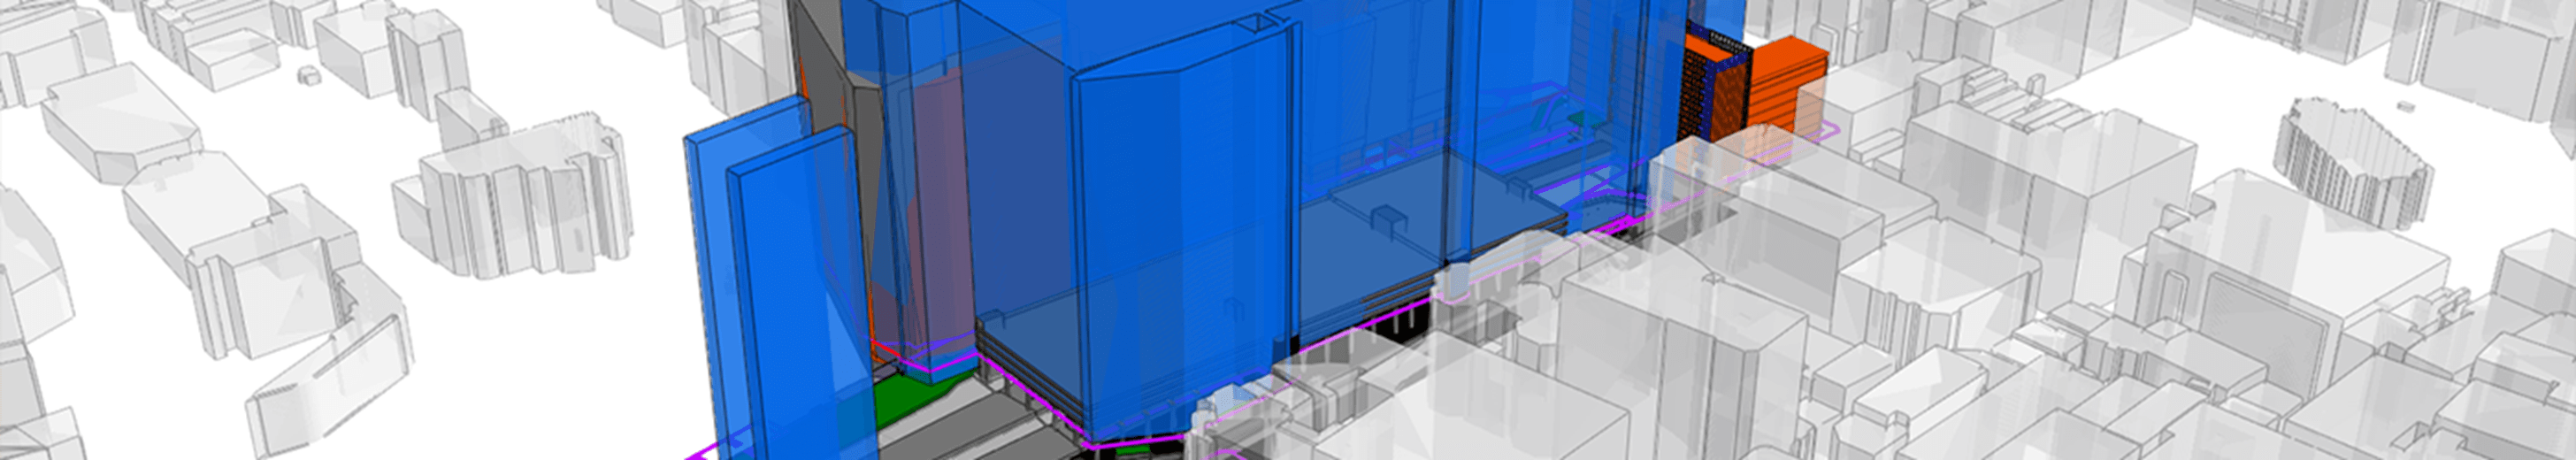 3D blueprints of a building structure